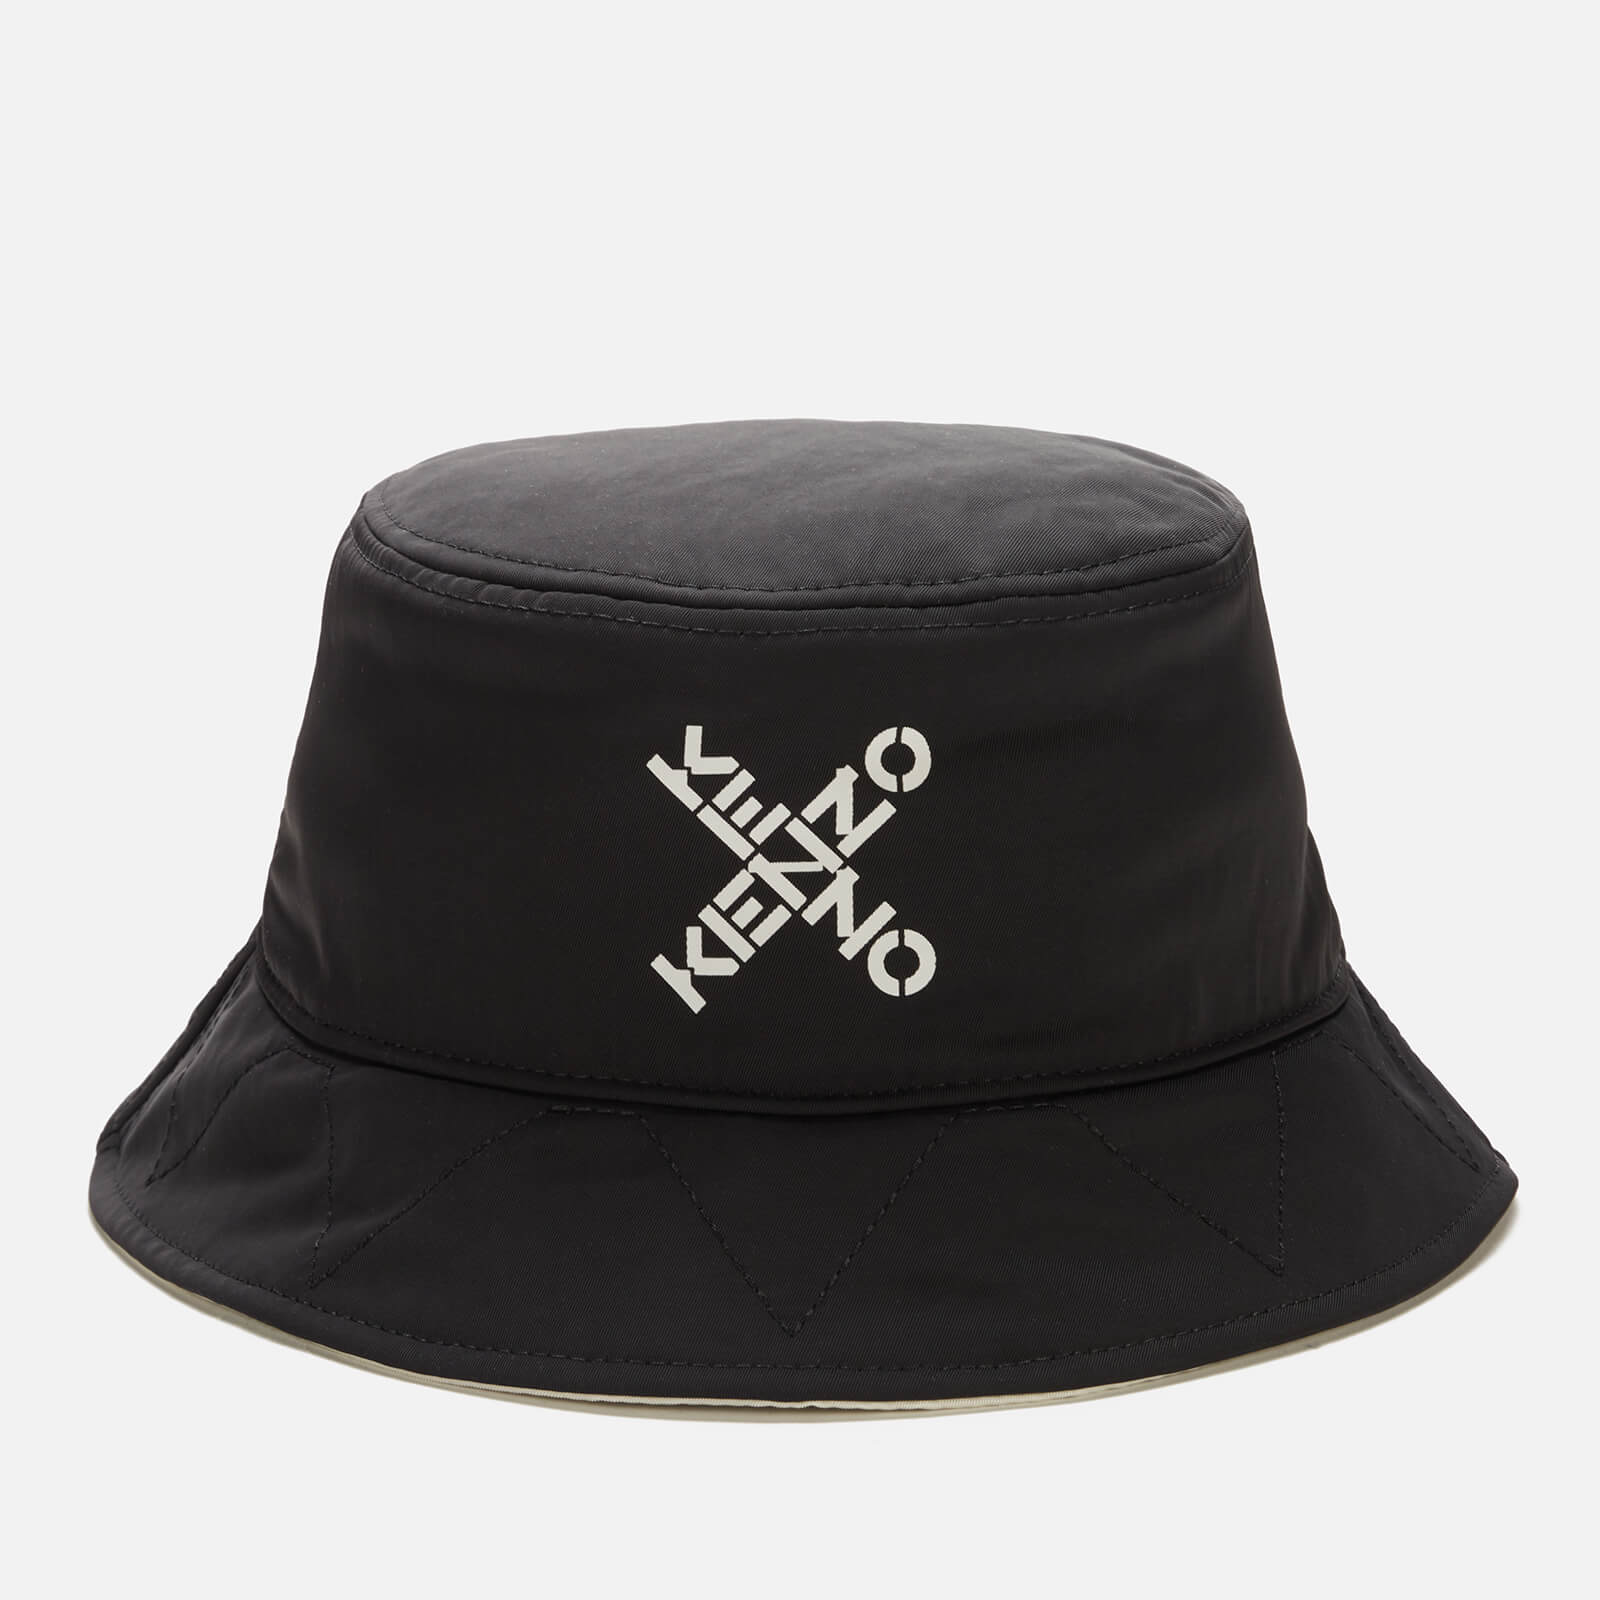 KENZO Men's Reversible Bucket Hat - Black - M